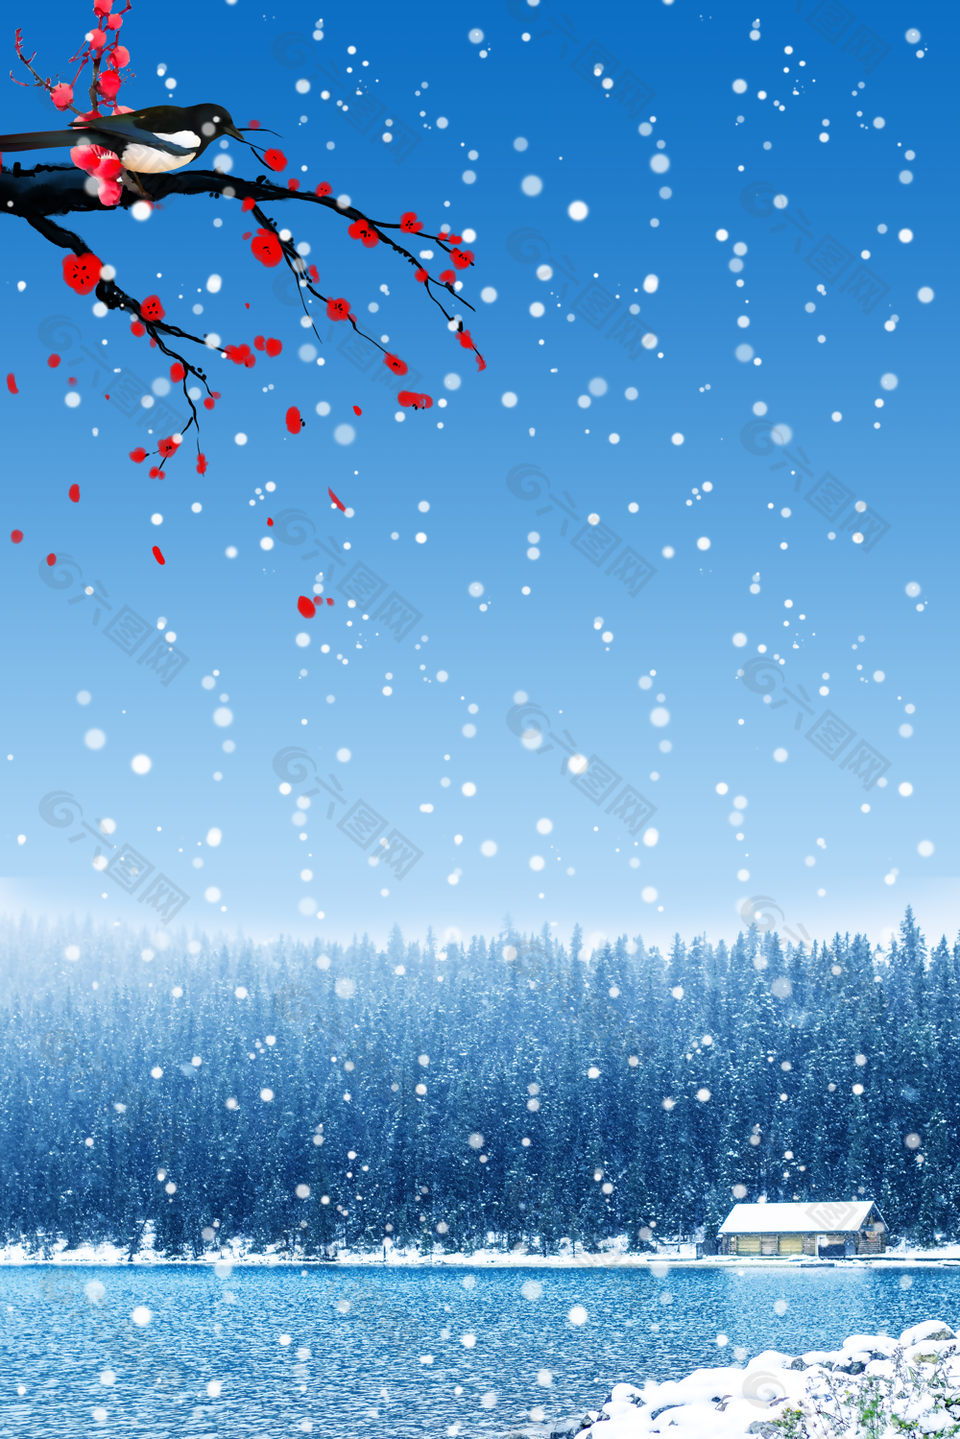 蓝色唯美湖边冬季雪景H5背景图下载